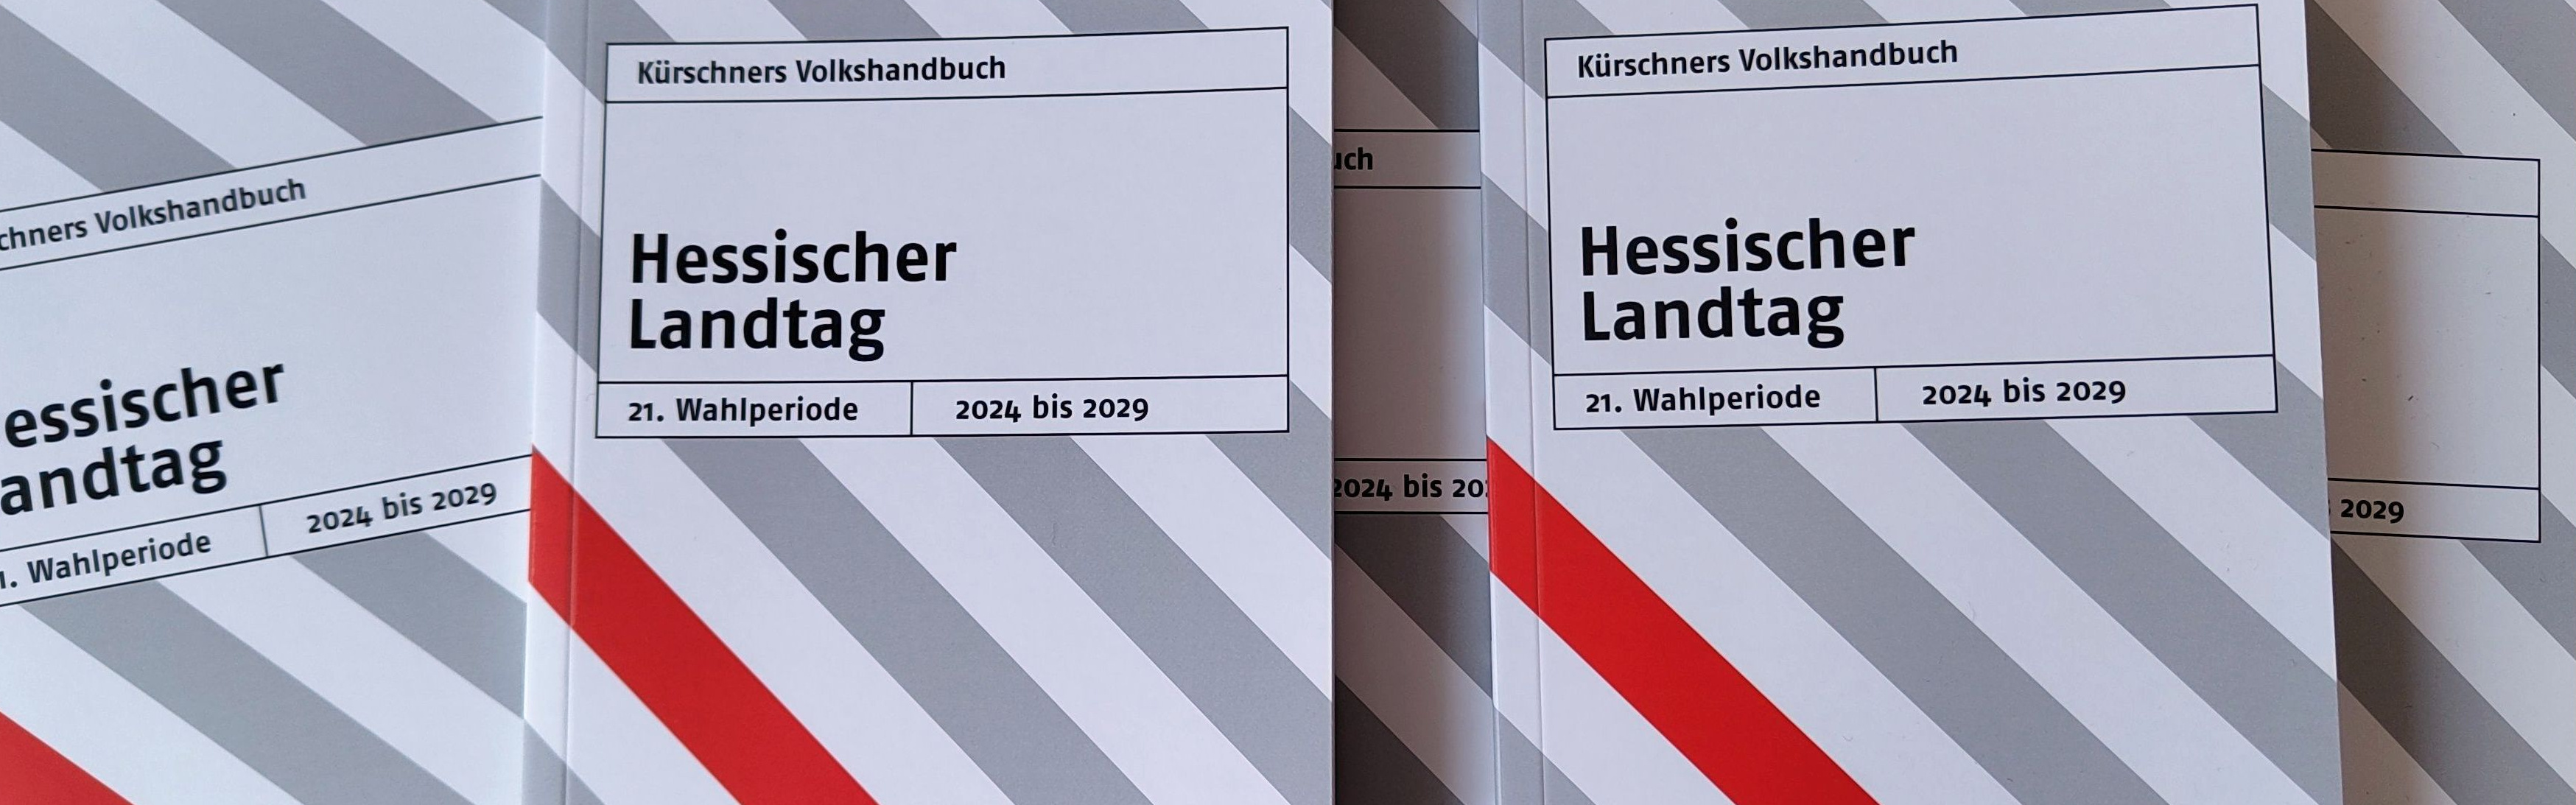 Mehrere nebeneinander liegende Exemplare des grau-weiß-rot gestreiften Taschenbuchs "Kürschners Volkshandbuch Hessischer Landtag". 